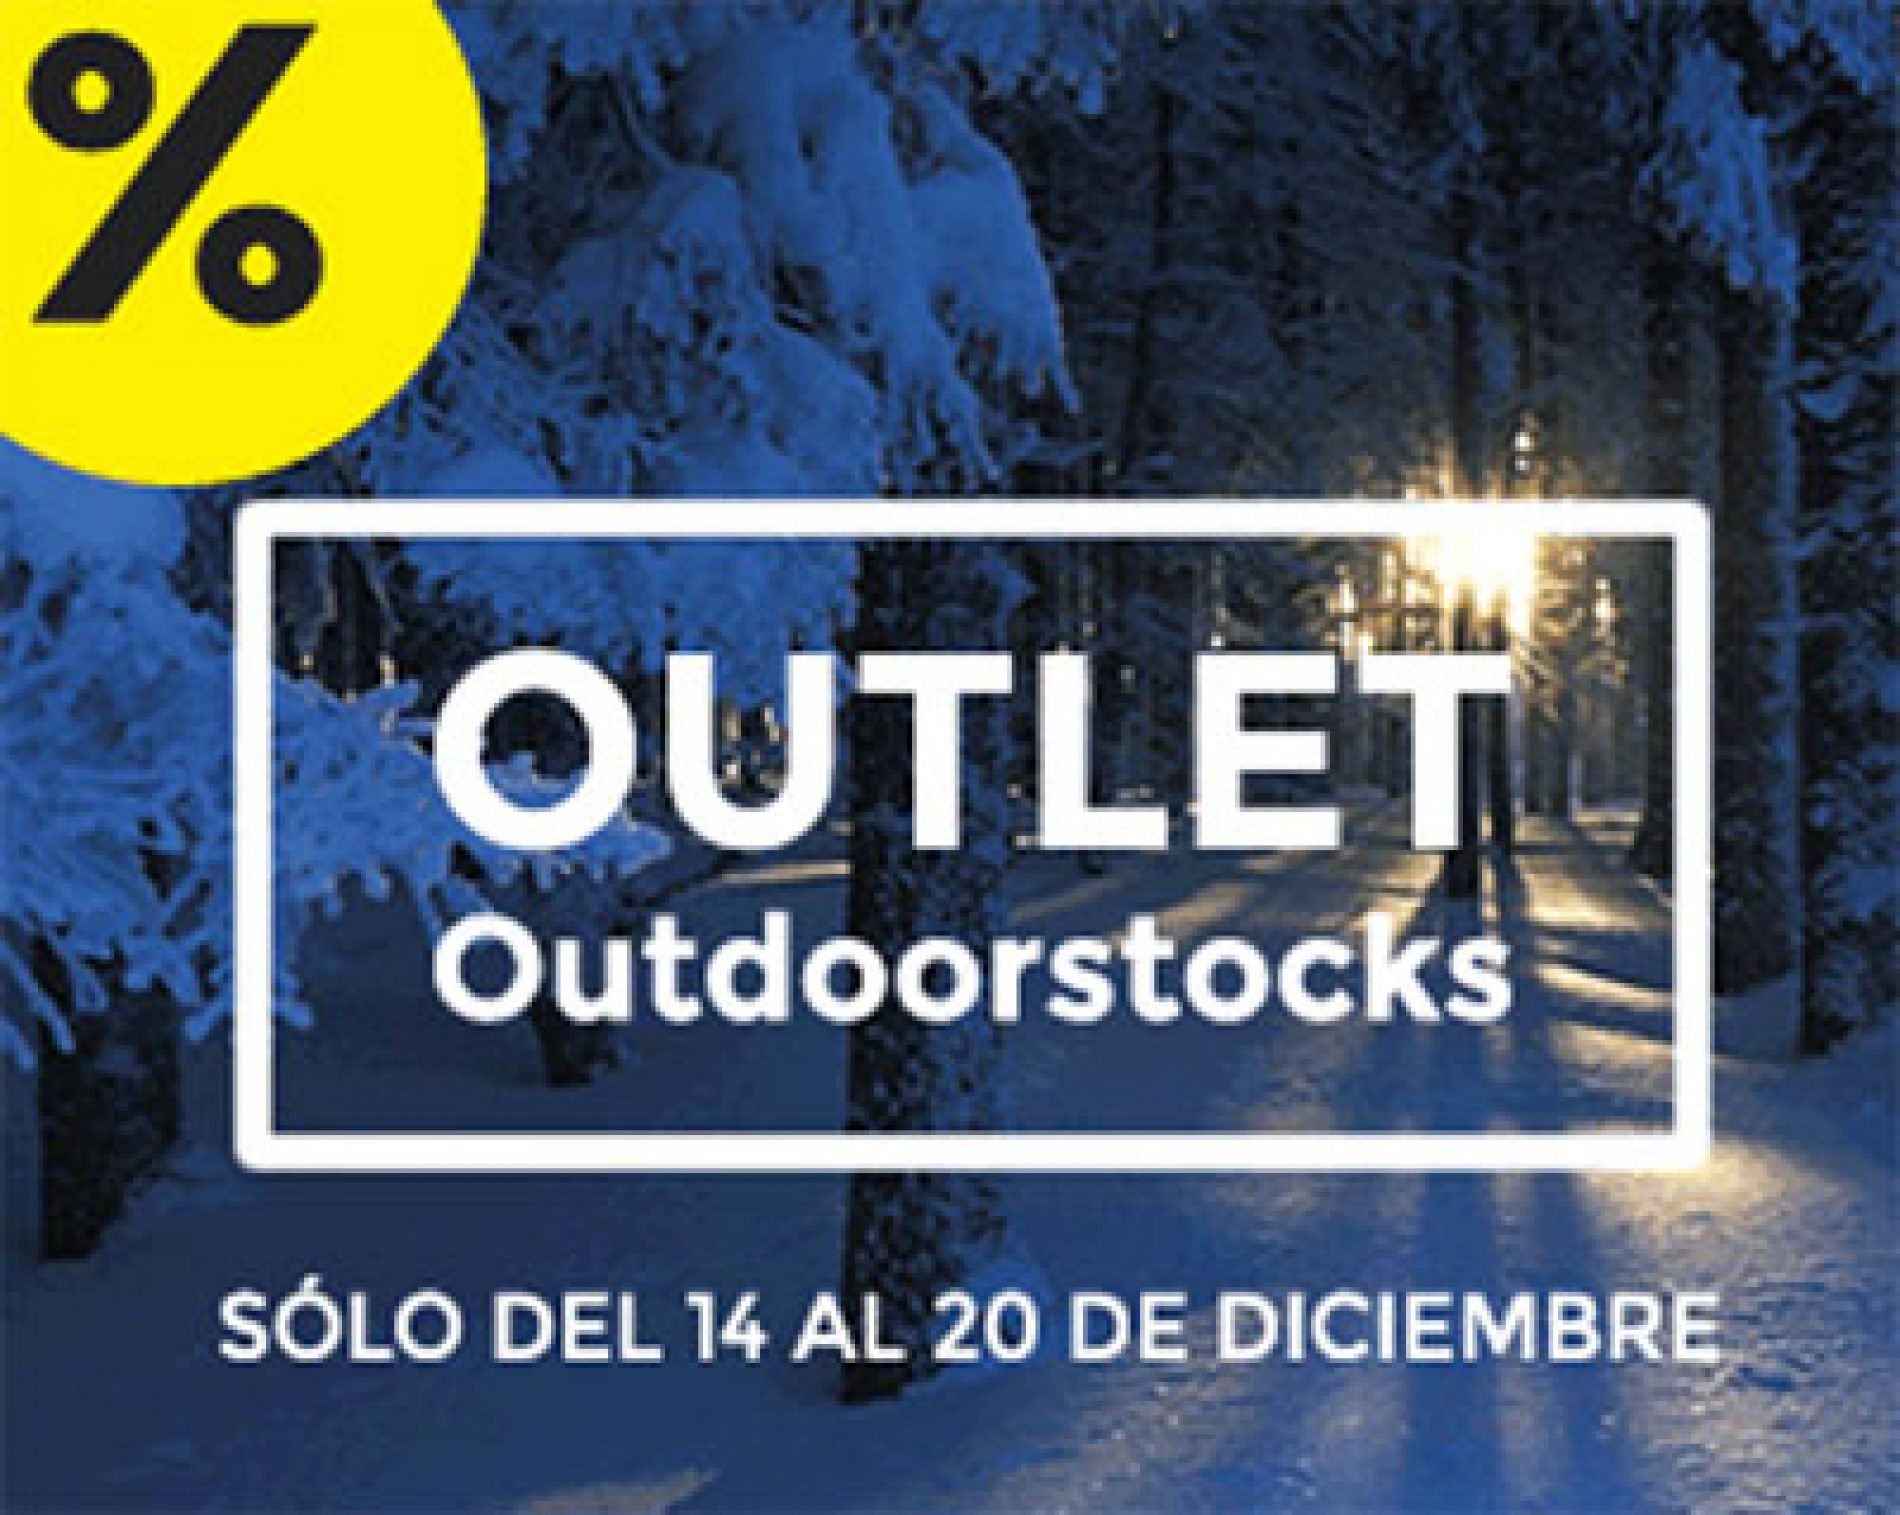 Outdoorstocks repite Outlet en Madrid estas Navidades